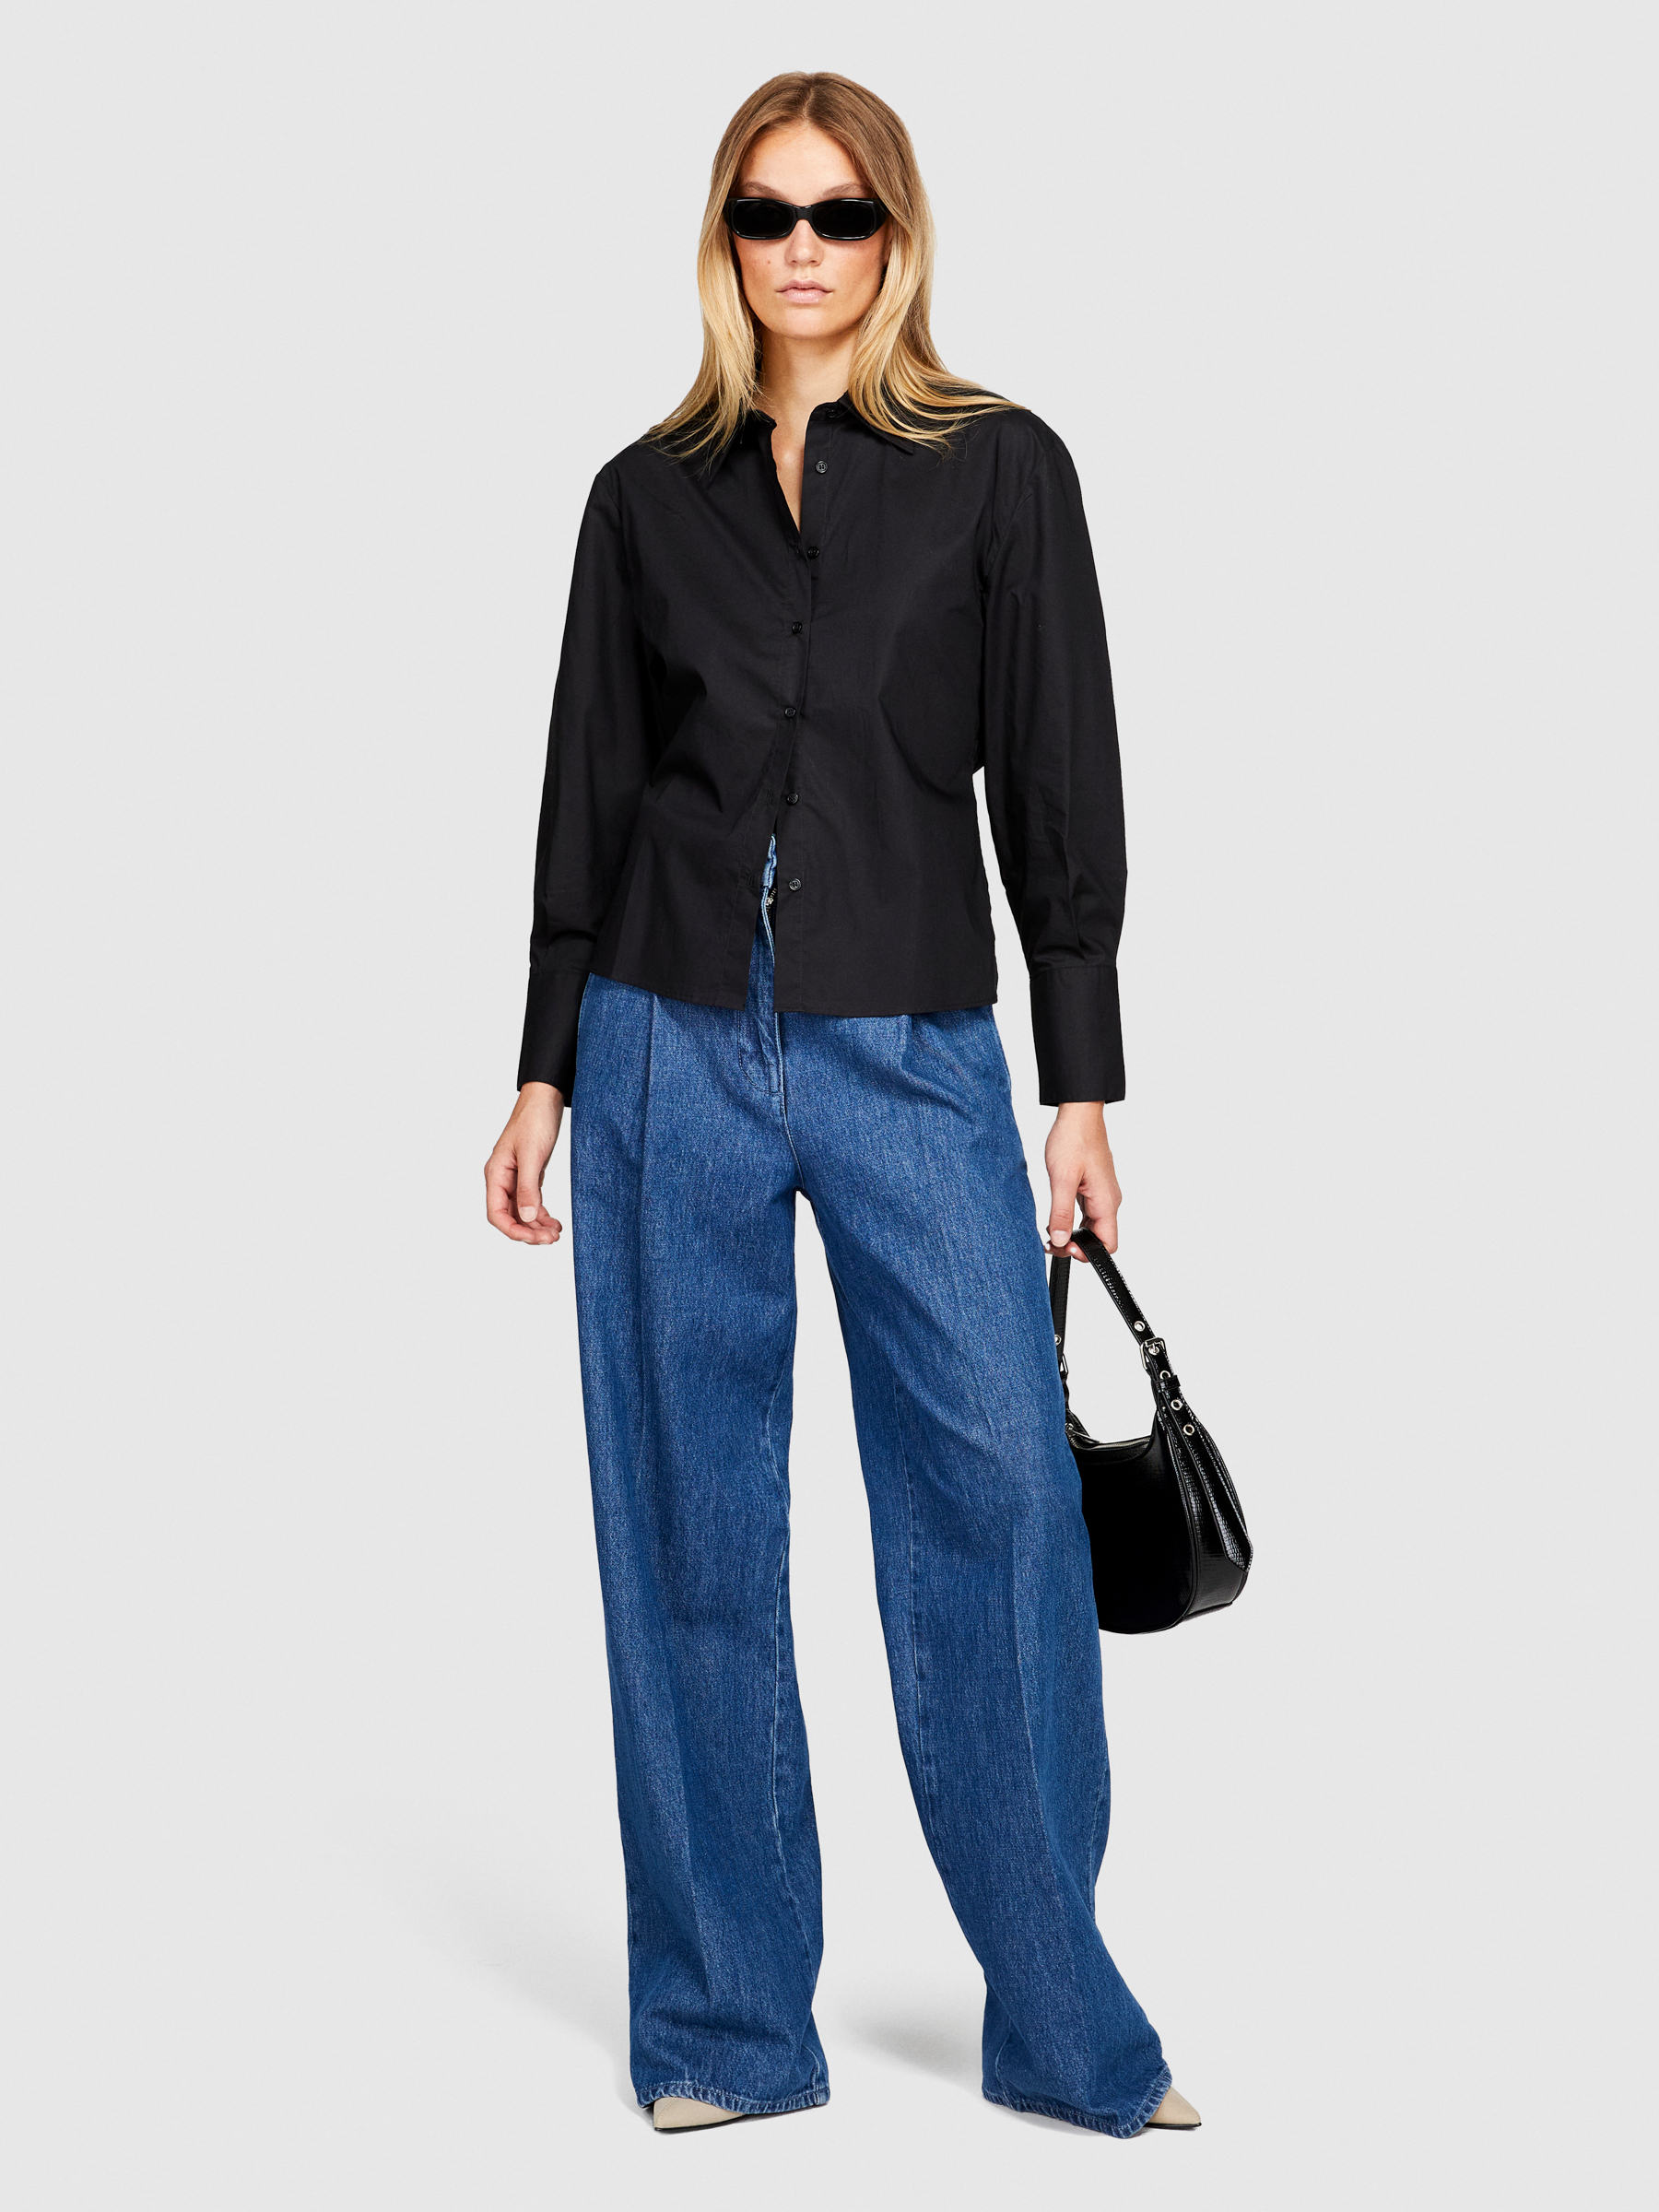 Sisley - Asymmetrical Shirt, Woman, Black, Size: S